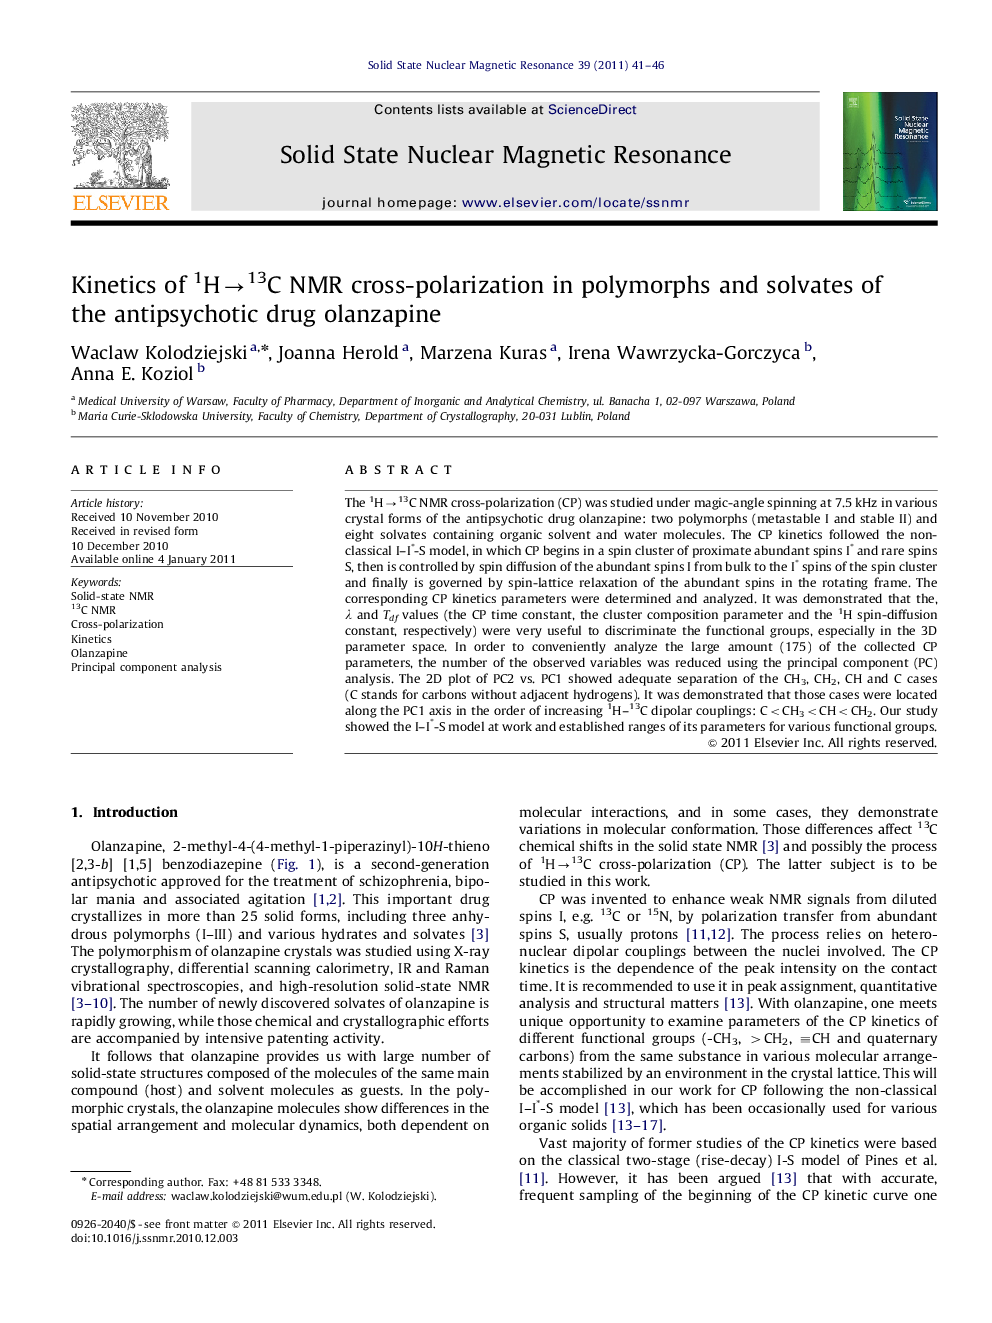 Kinetics of 1Hâ13C NMR cross-polarization in polymorphs and solvates of the antipsychotic drug olanzapine